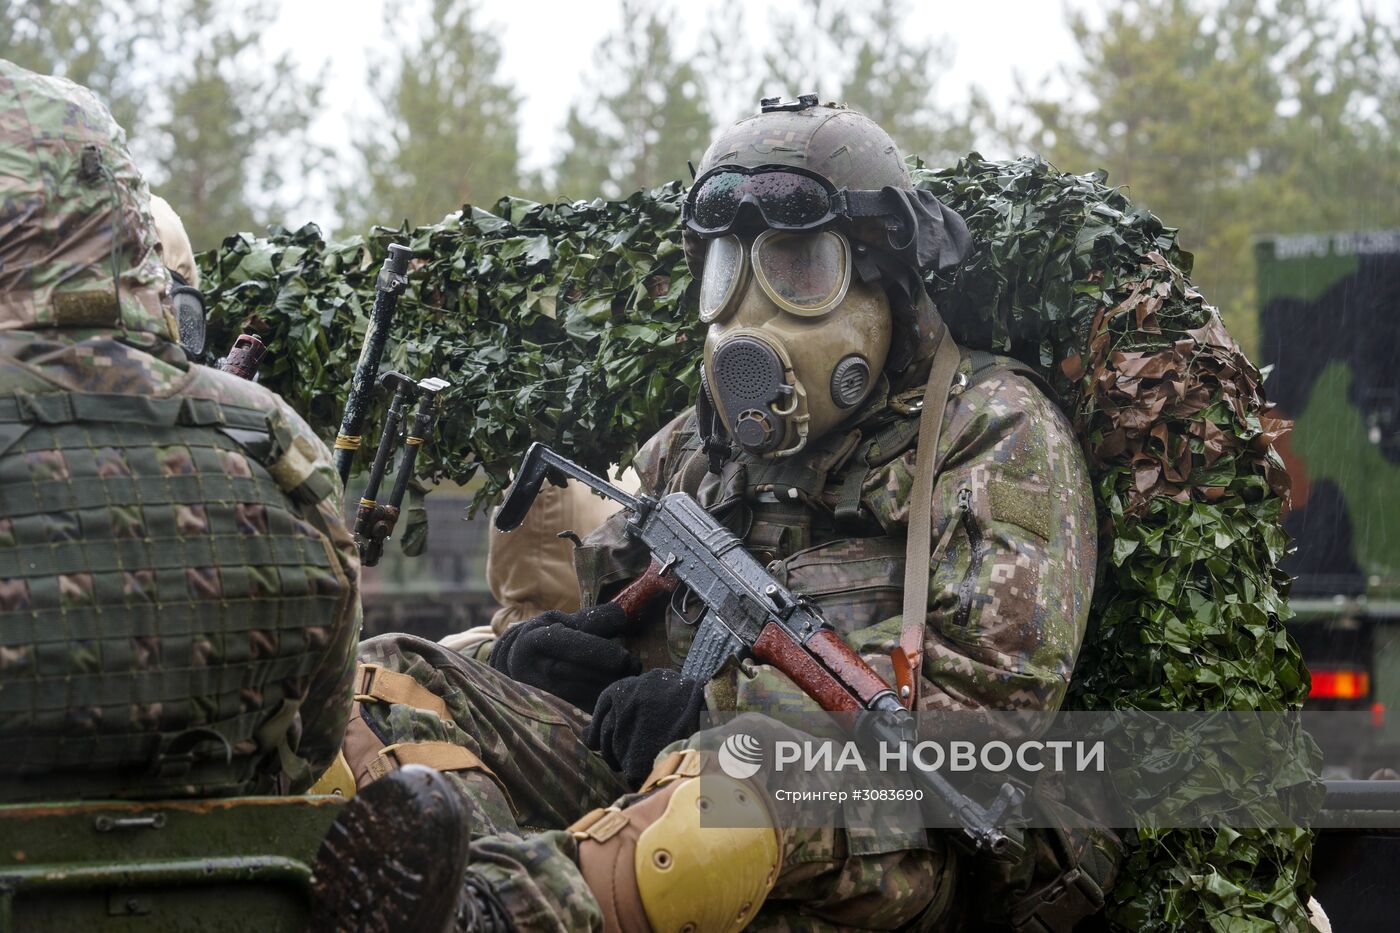 Международные военные учения "Summer Shield XIV" в Латвии